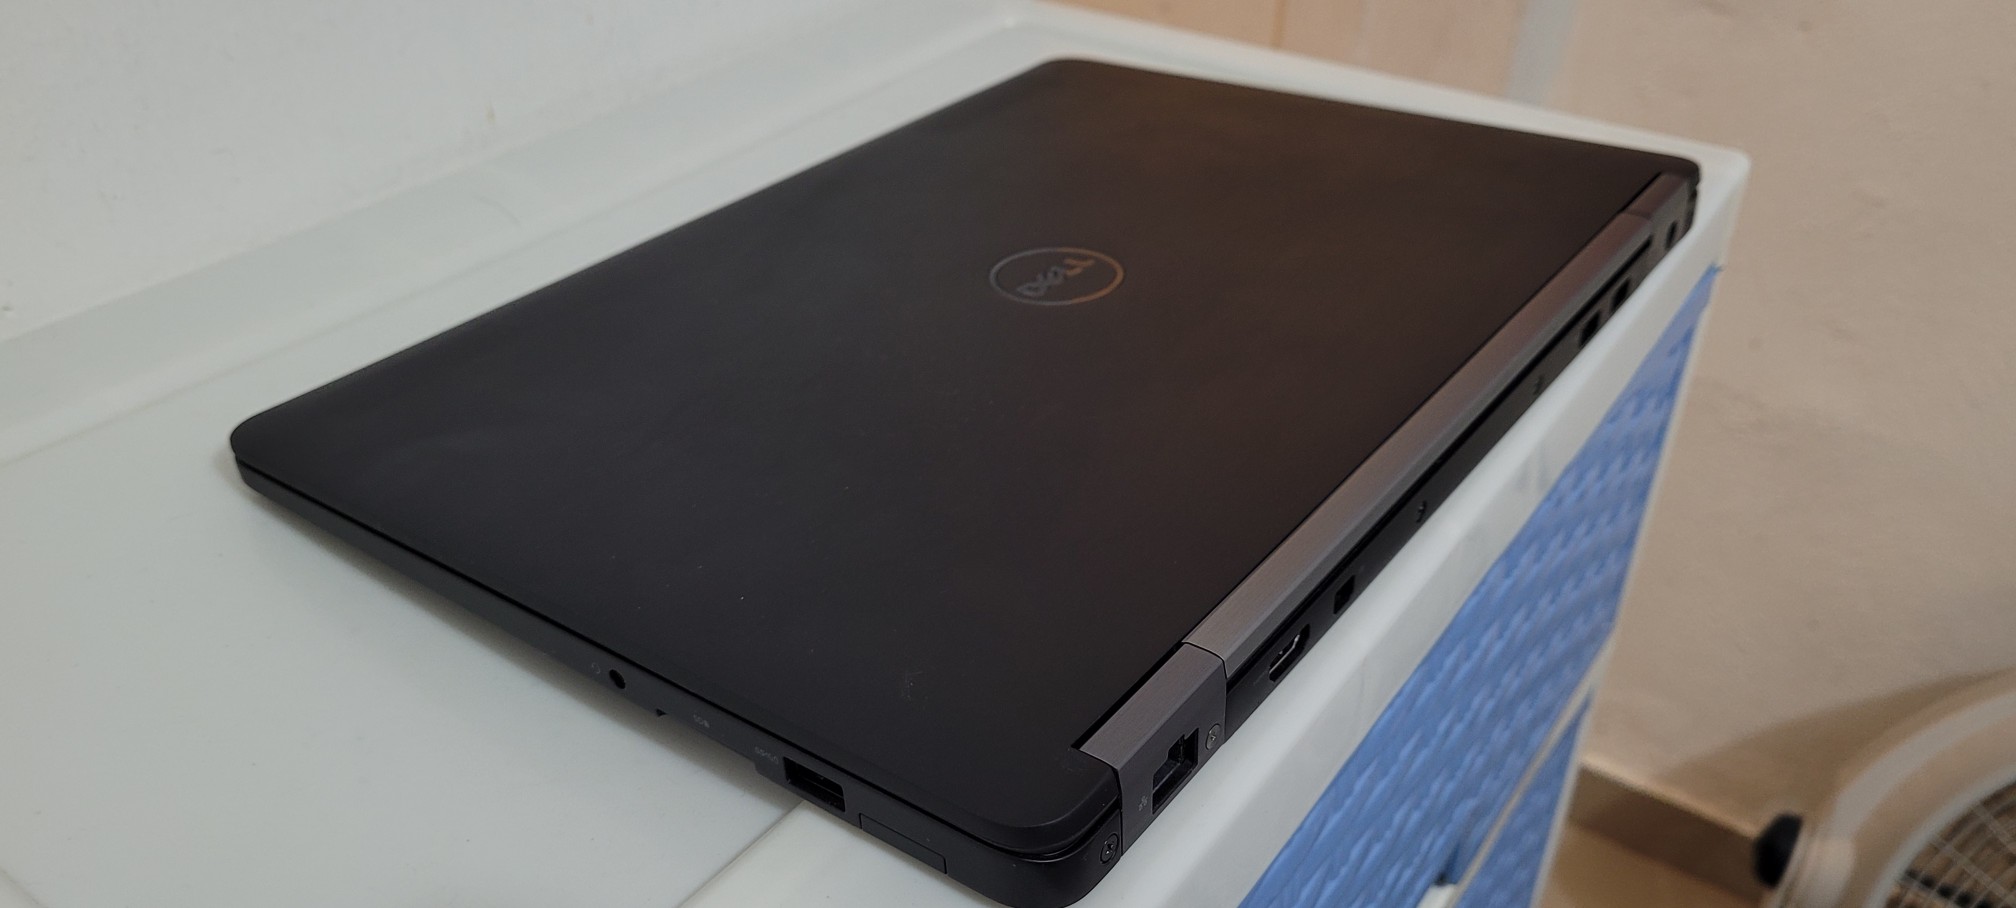 computadoras y laptops - Dell 5580 17 Pulg Core i7 2.6ghz Ram 16gb ddr4 Disco 256gb Nvidea 10gb full 2